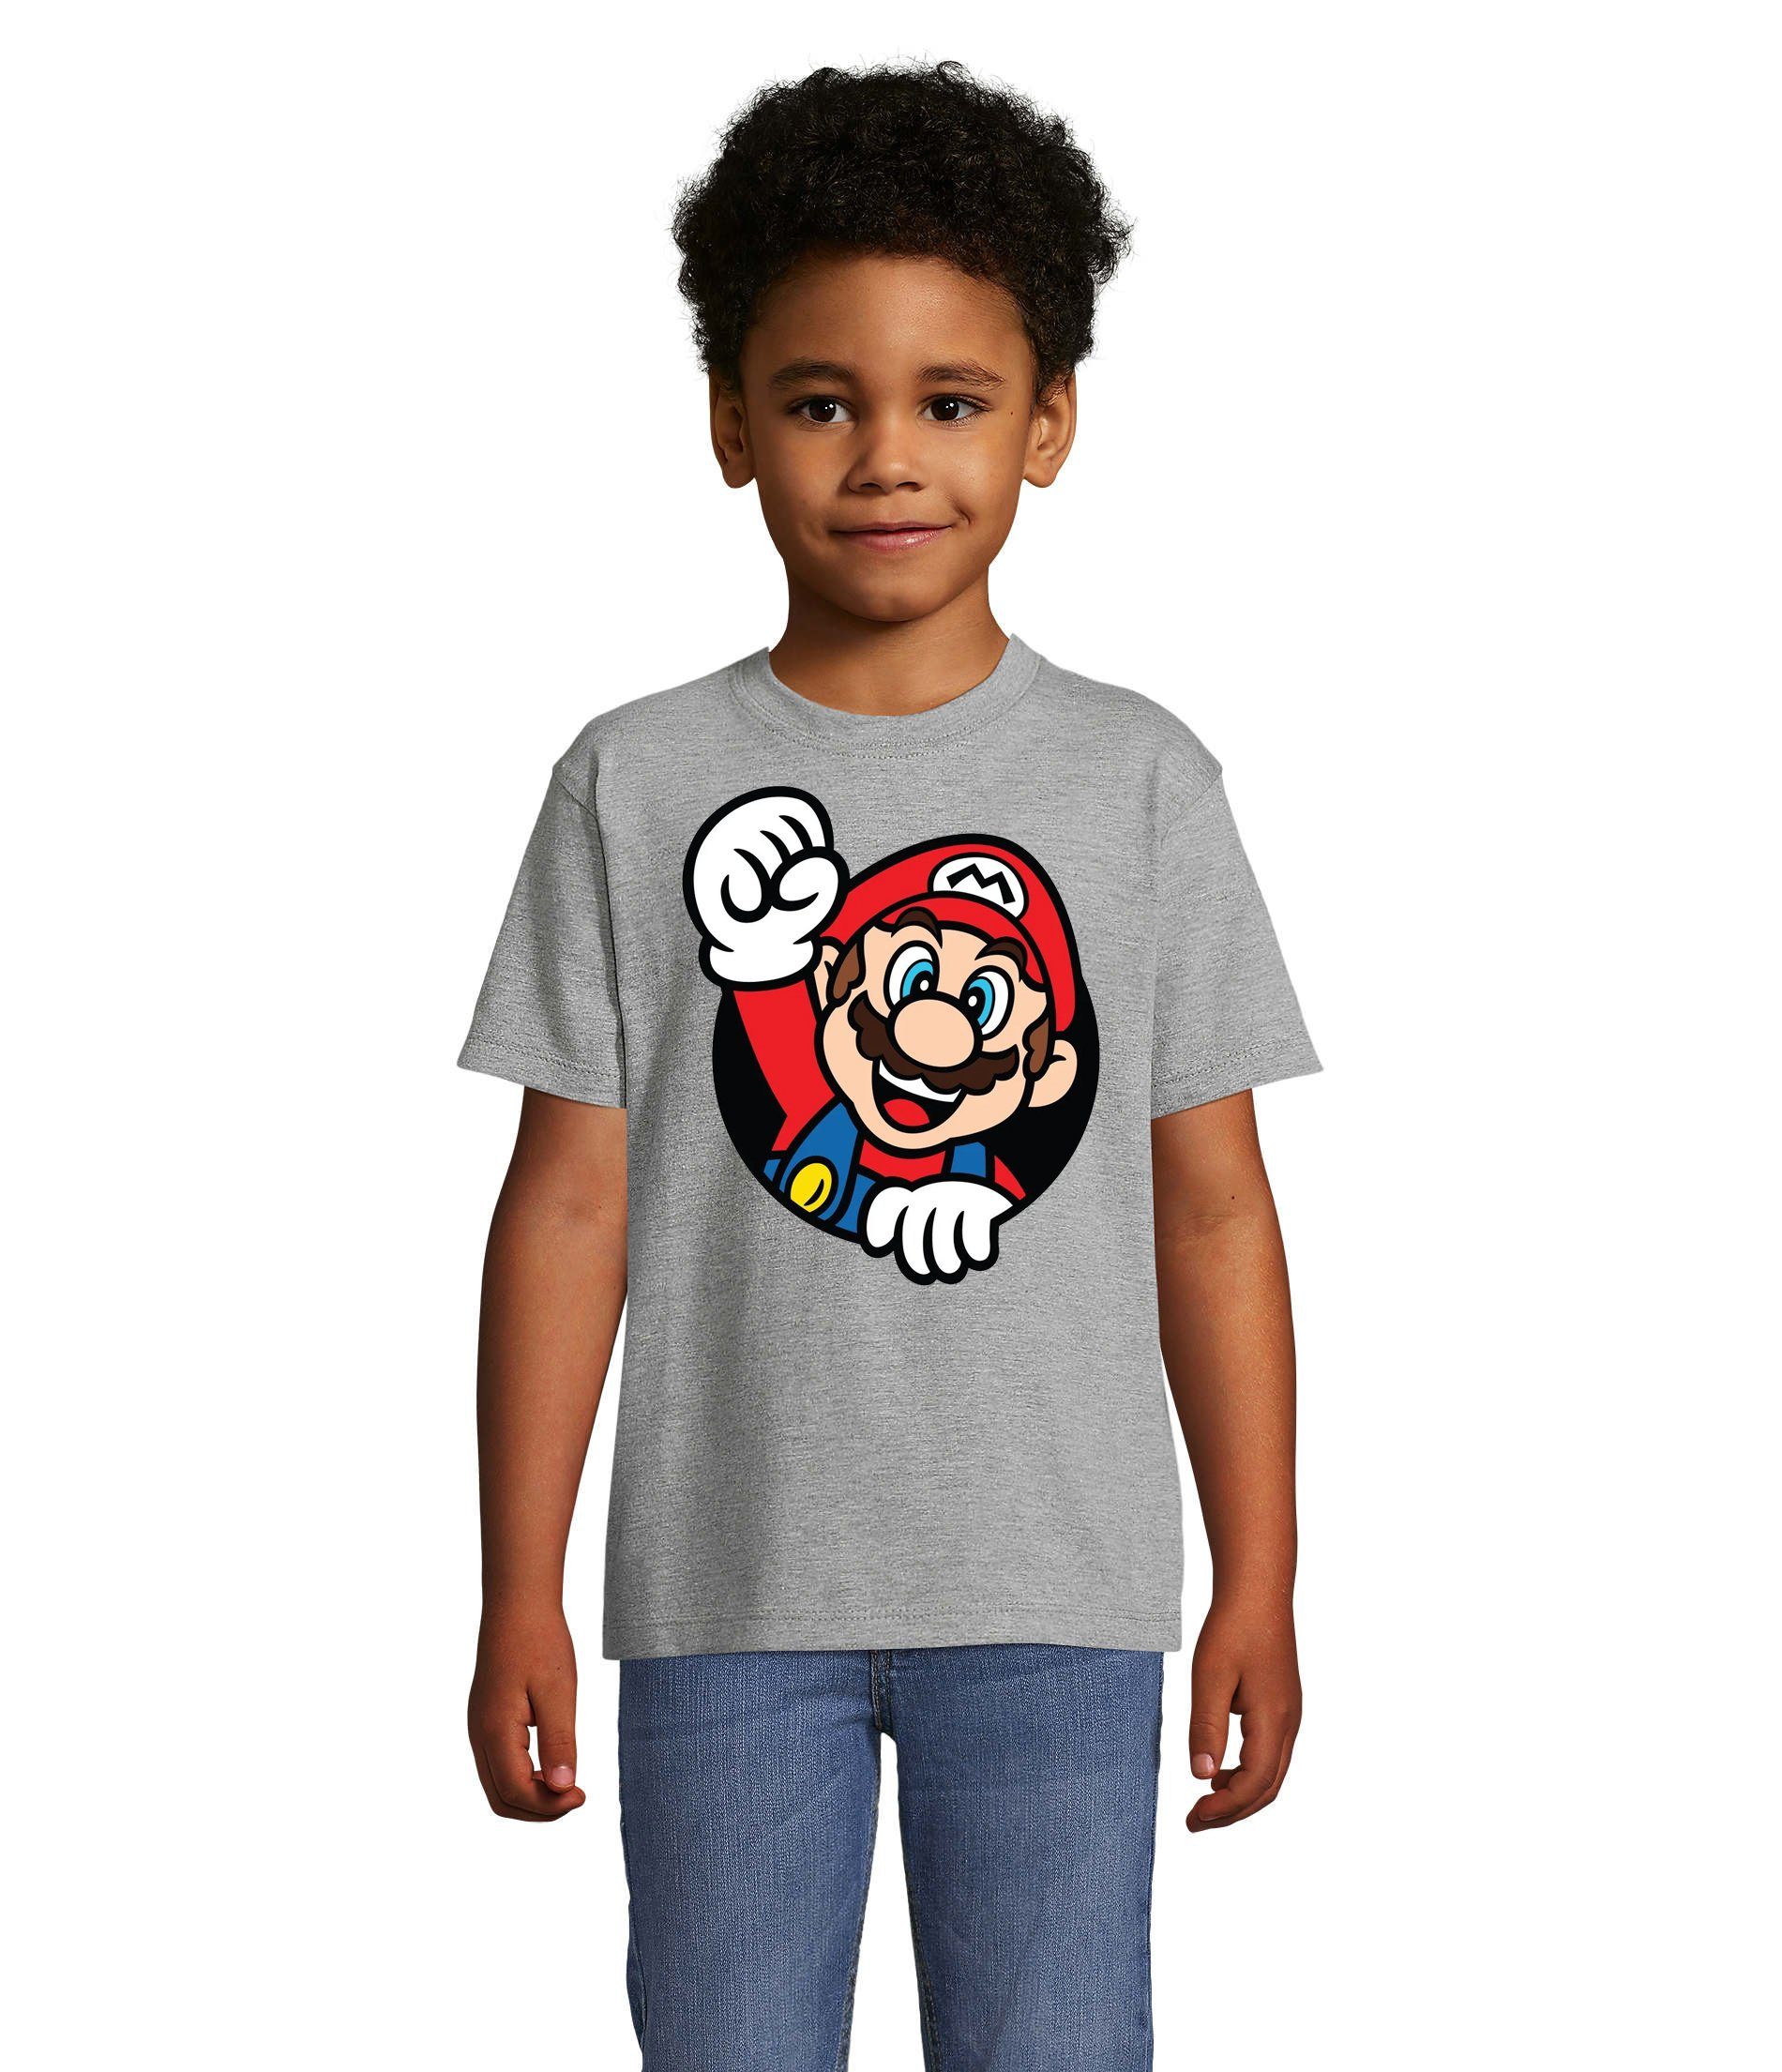 Blondie Konsole & Grau T-Shirt Brownie Konsole Super Kinder Gaming Spiel Nintendo Nerd Faust Mario